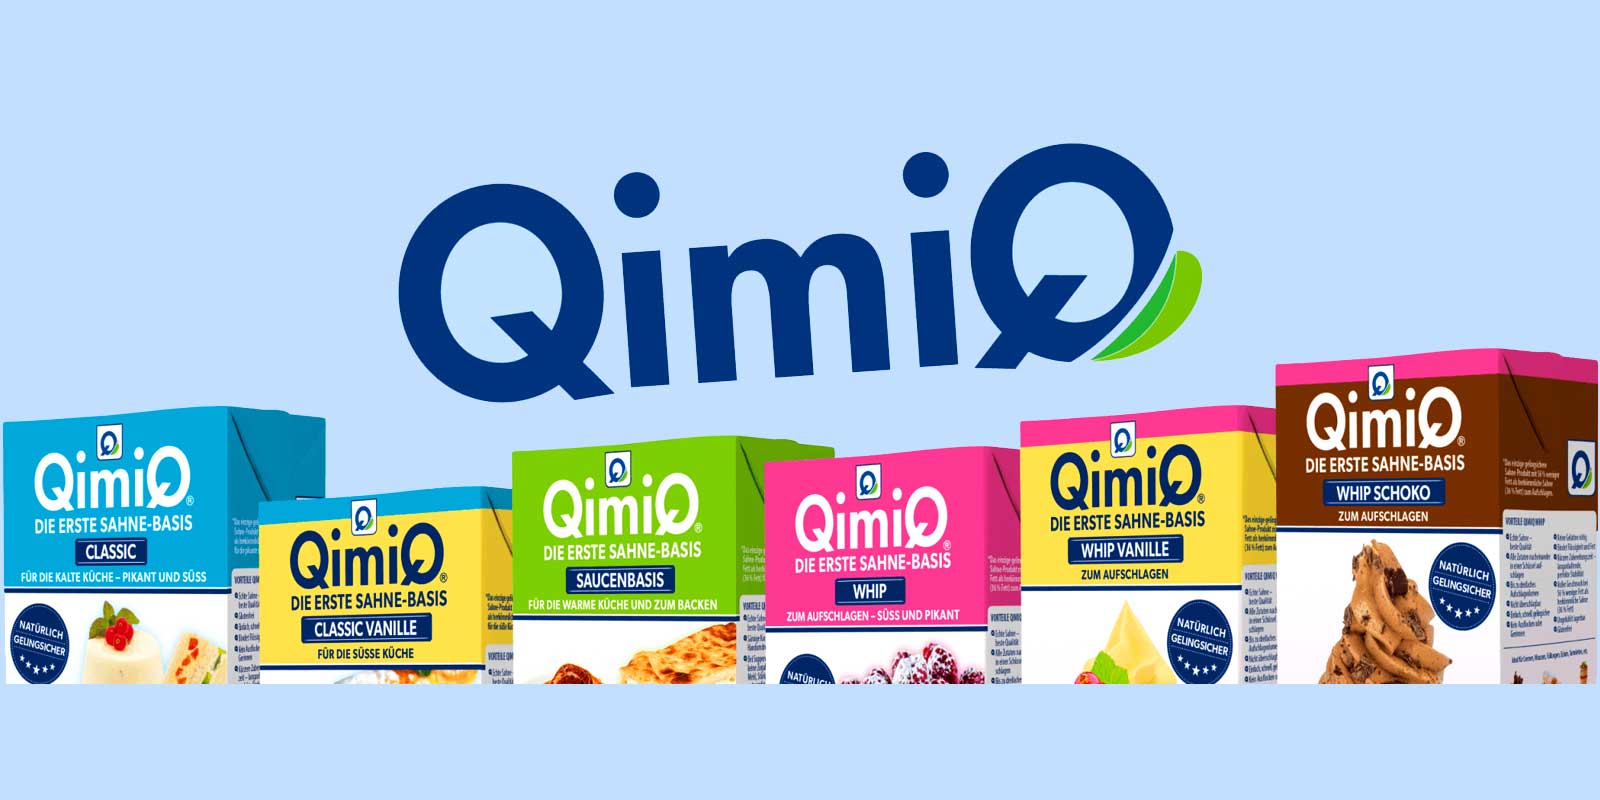 QimiQ urunleri QimiQ, yalnizca %15 yag iceren ilk acik krem bazidir. Notr bir tada sahiptir ve bu nedenle tatli ve tuzlu yiyeceklerin yani sira sicak ve soguk yemekler icin de uygundur. QimiQ %100 dogal bir urundur.